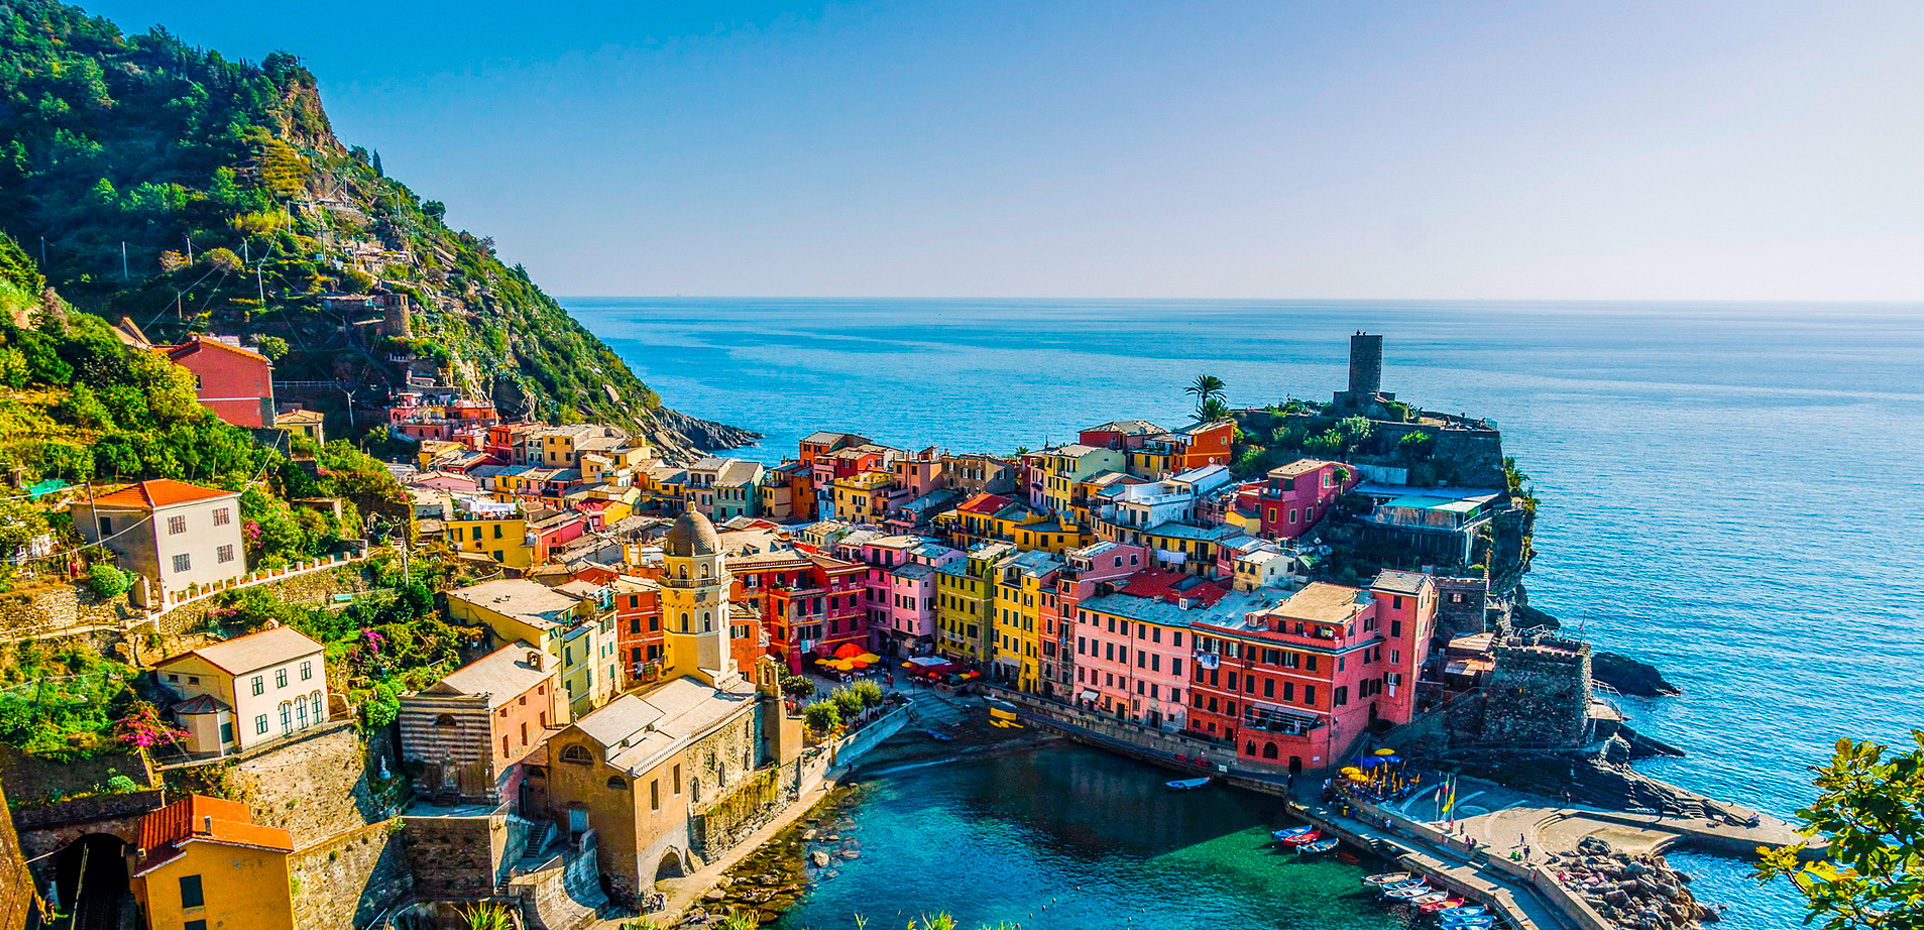 Last Minute Mediterranean Cruises Discounted prices Cruisetopic